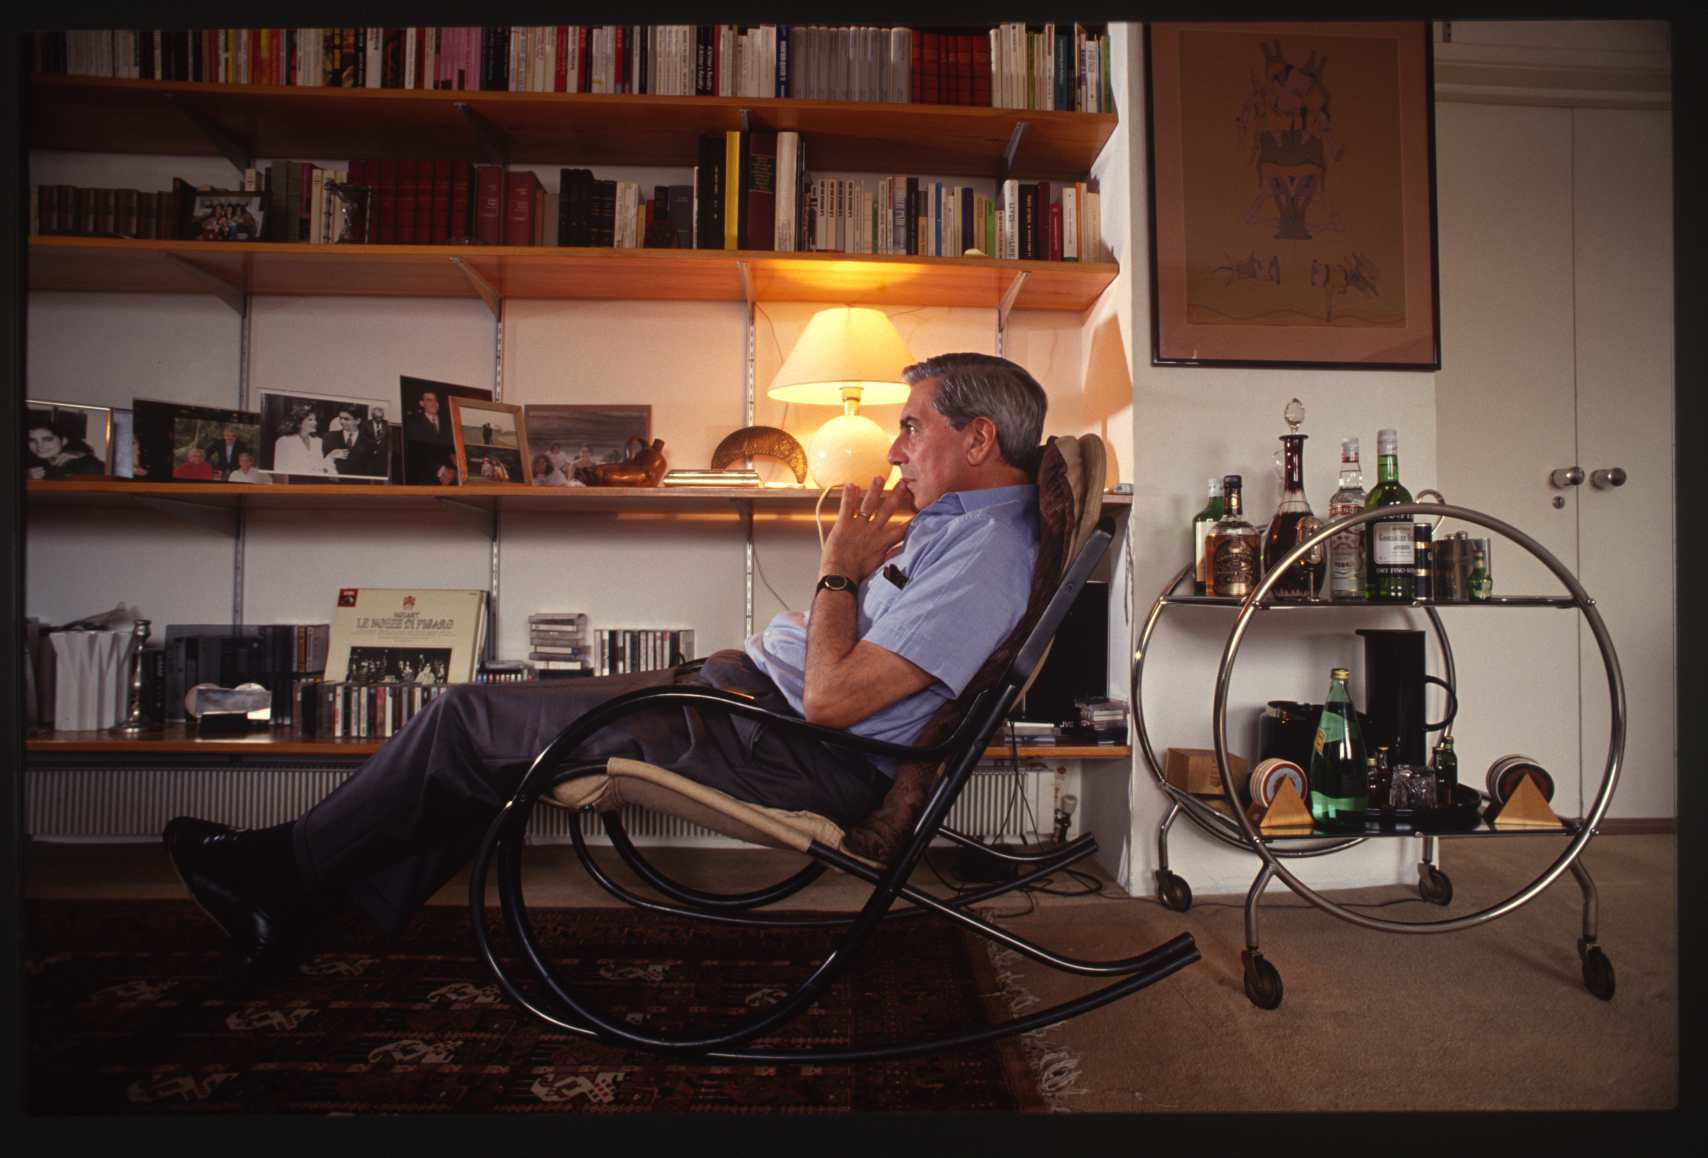  &nbsp;Mario Vargas Llosa.&nbsp;Peruvian writer. The mid 1990s 